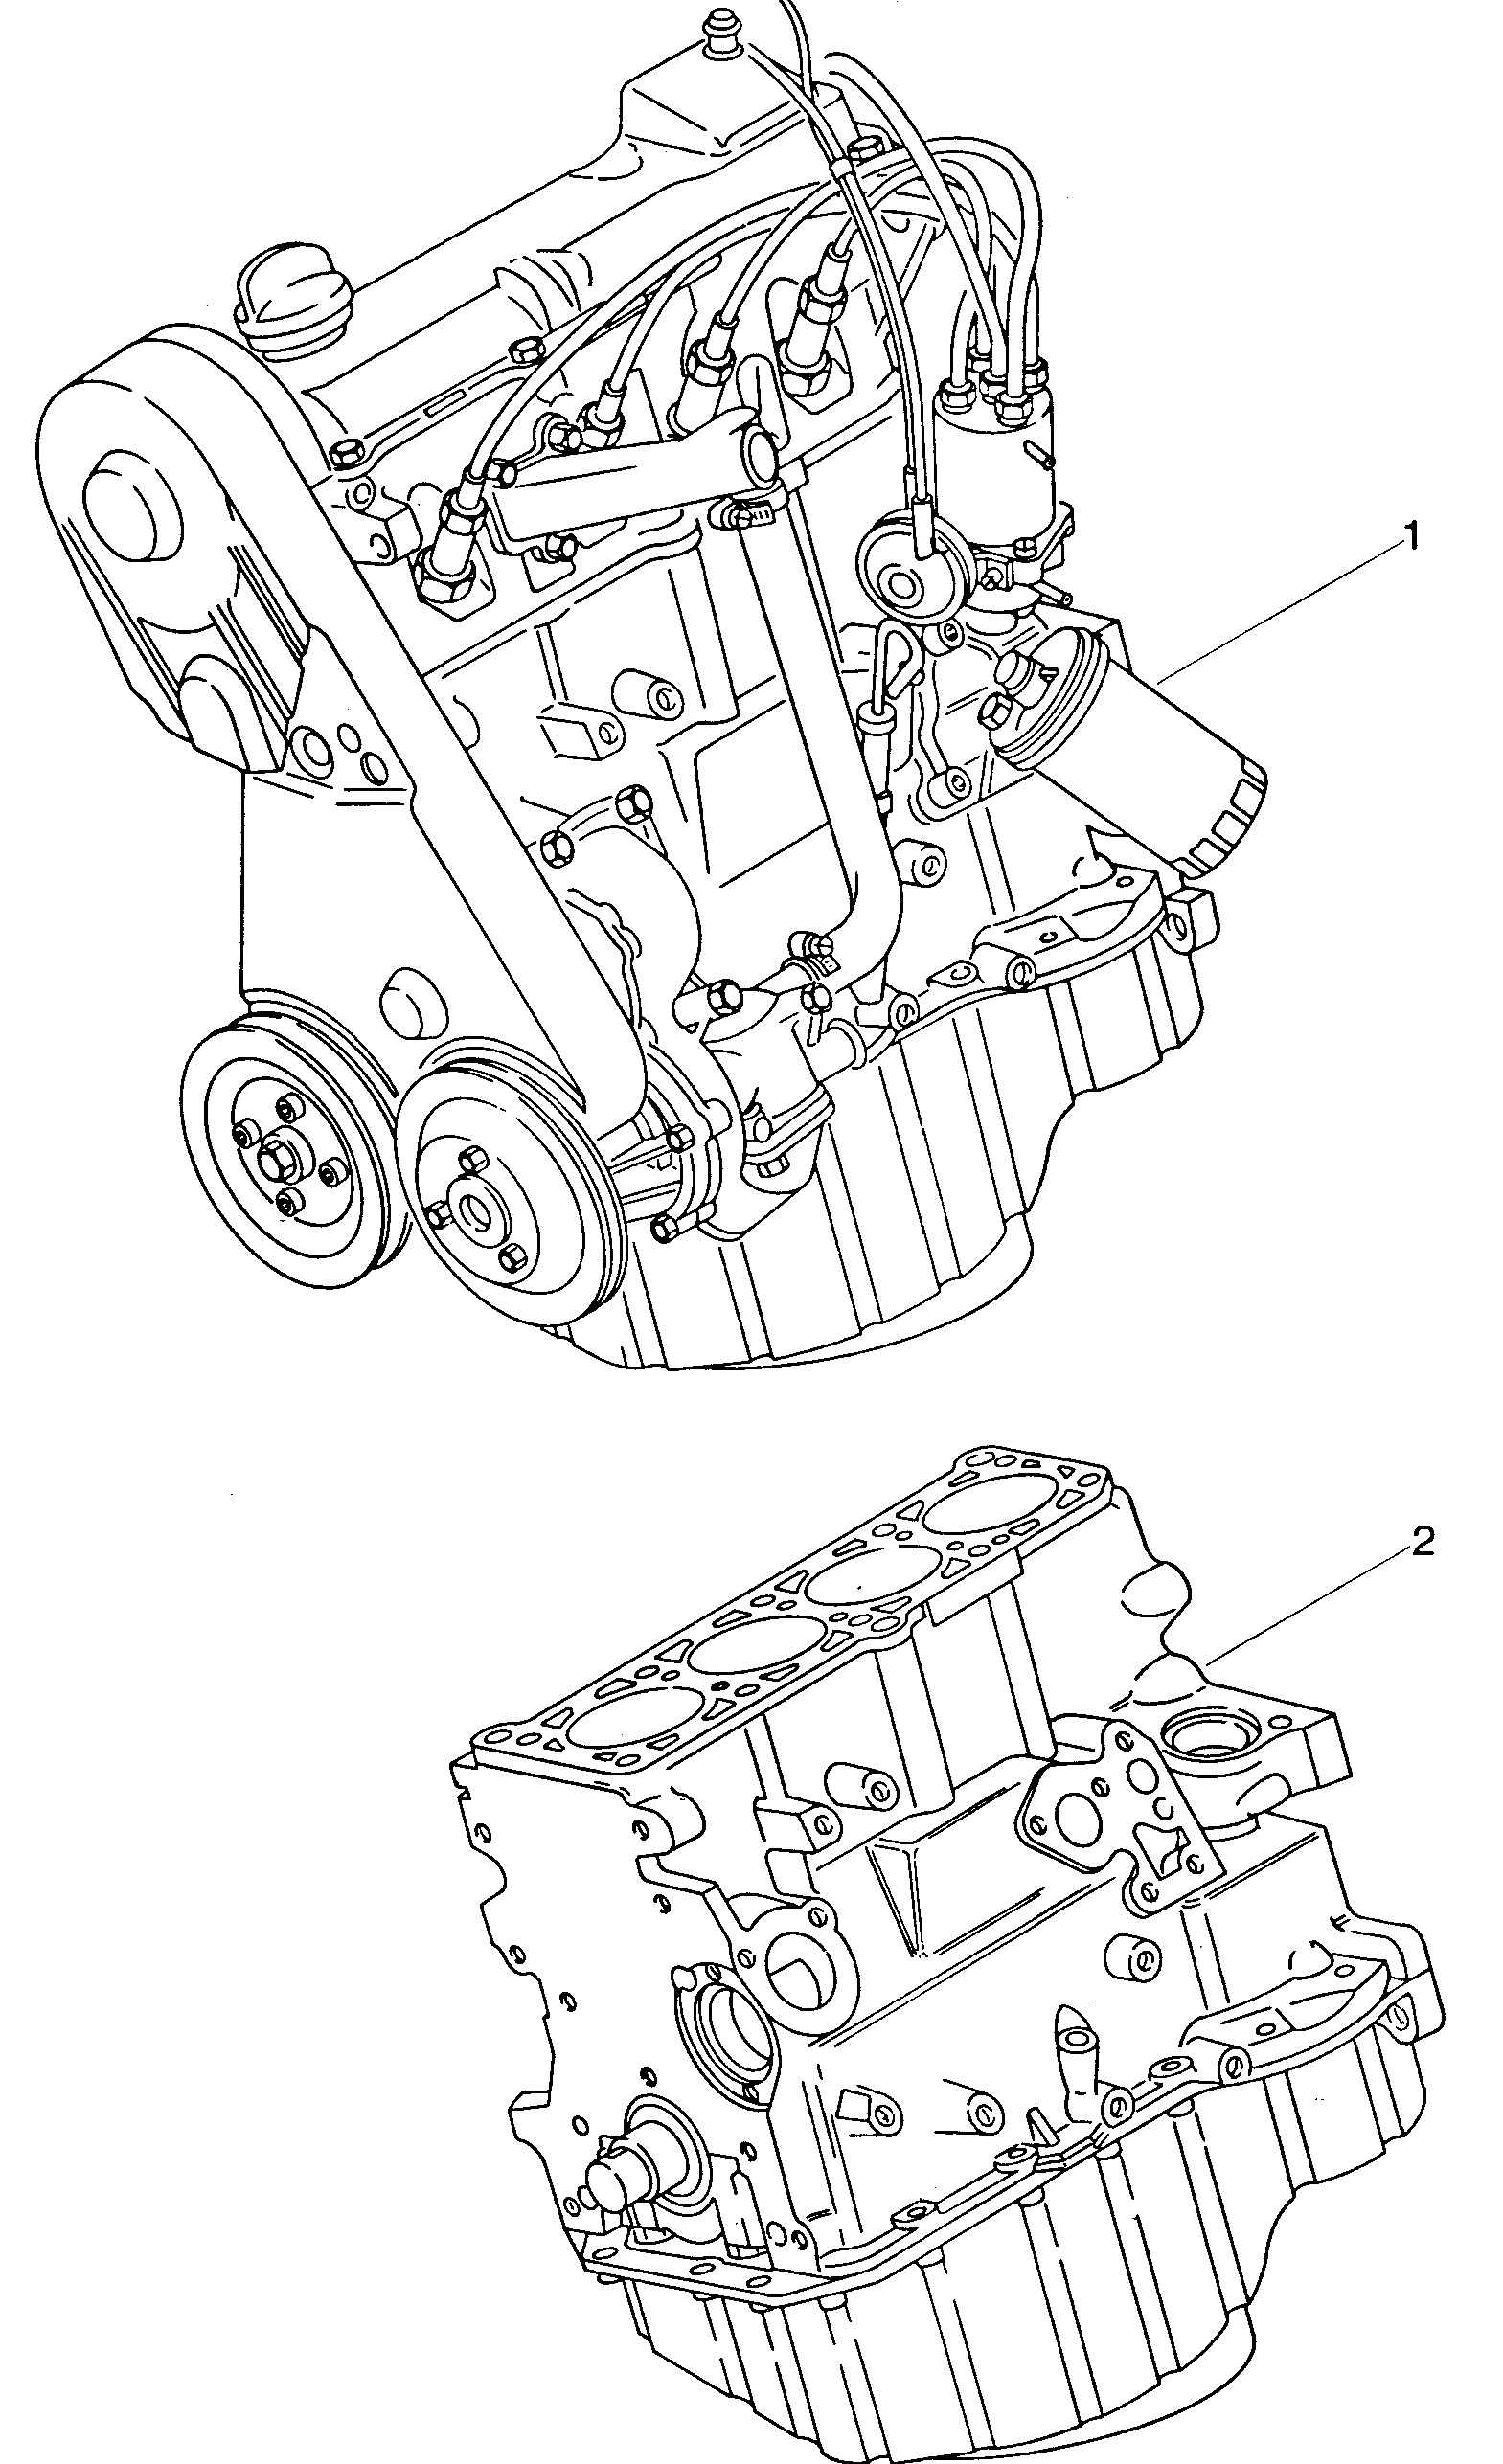 motor aligerado con ciguenal,<br>pistones,bomba y carter aceite  - Mod.181 / Iltis - ilt